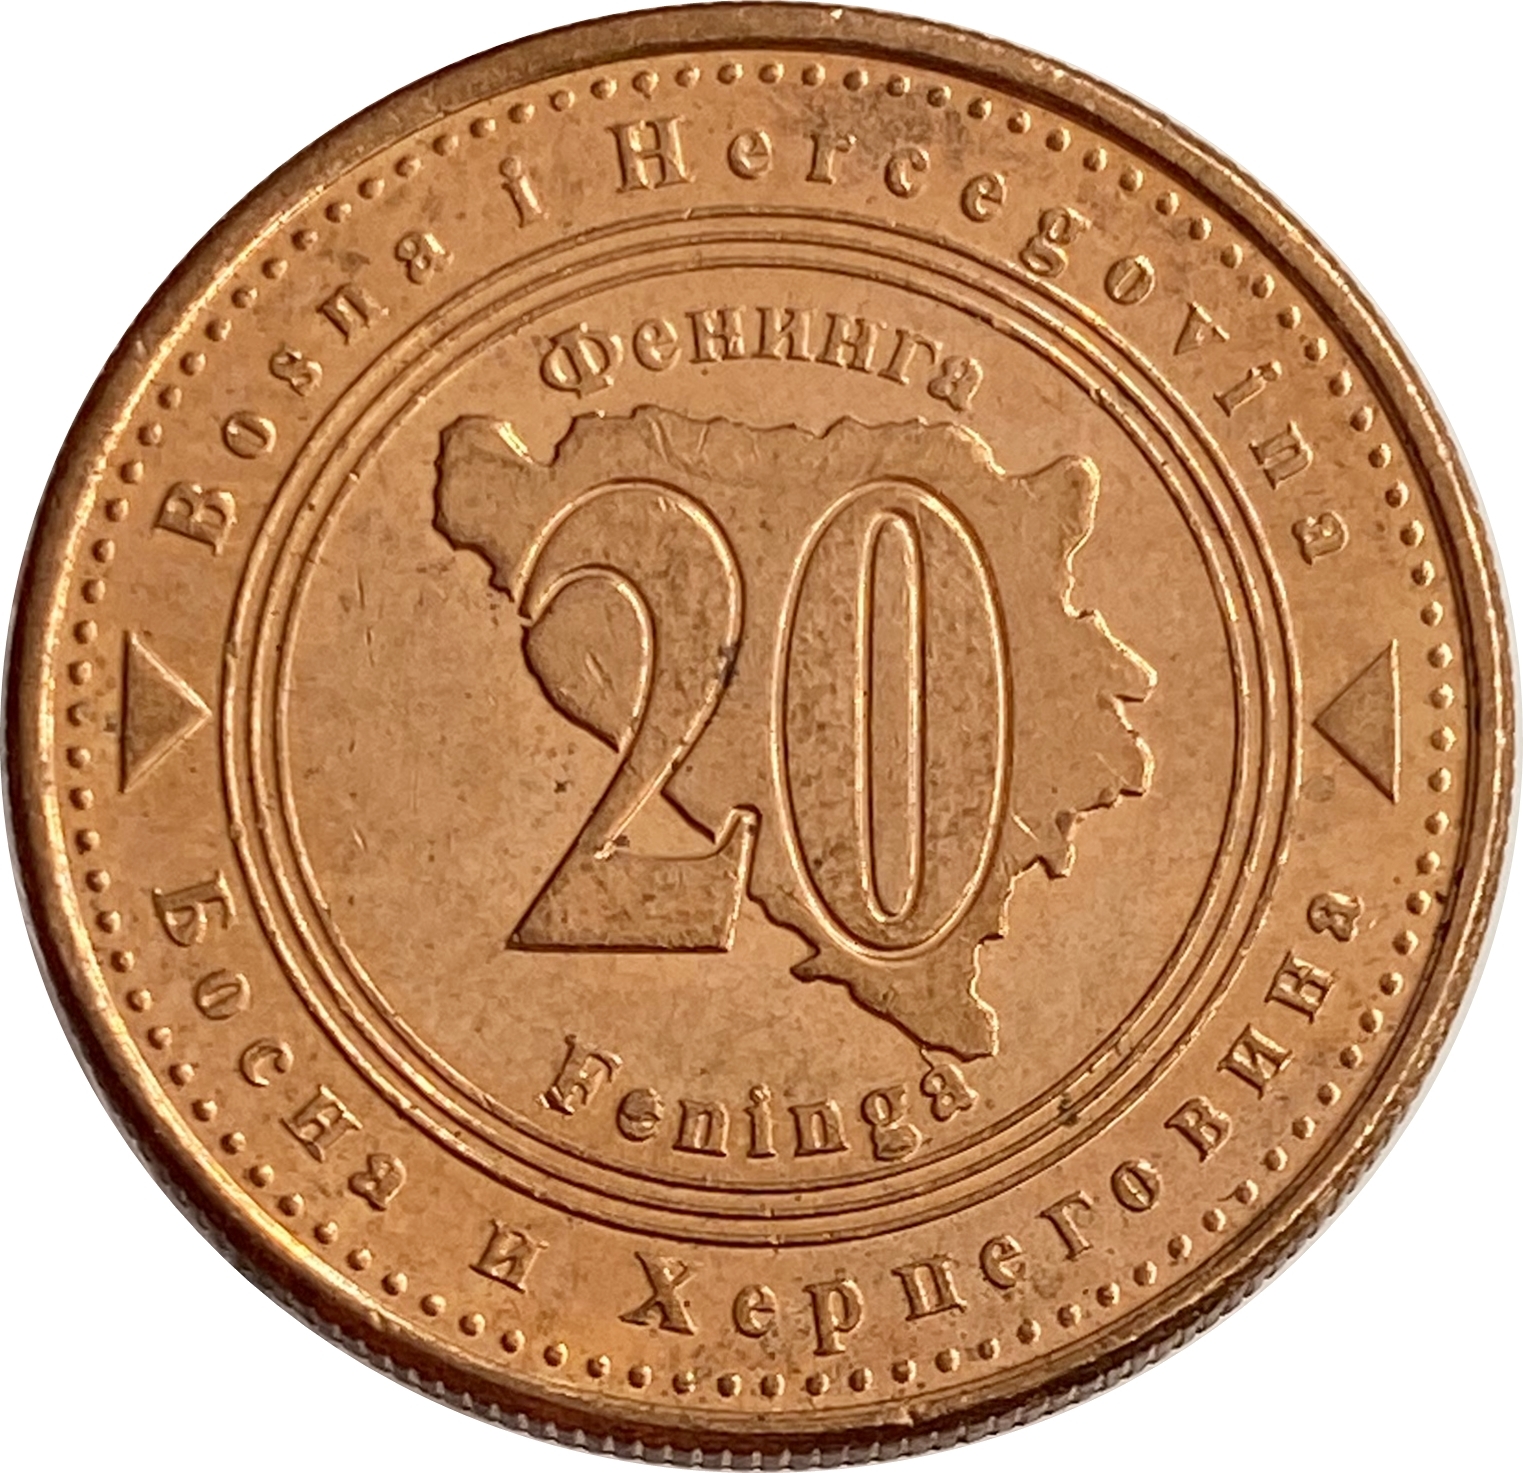 Босния и герцеговина валюта. Монета 20 фенингов Босния и Герцеговина. Фенинга монета. Монета 1 фенинг Австрия.